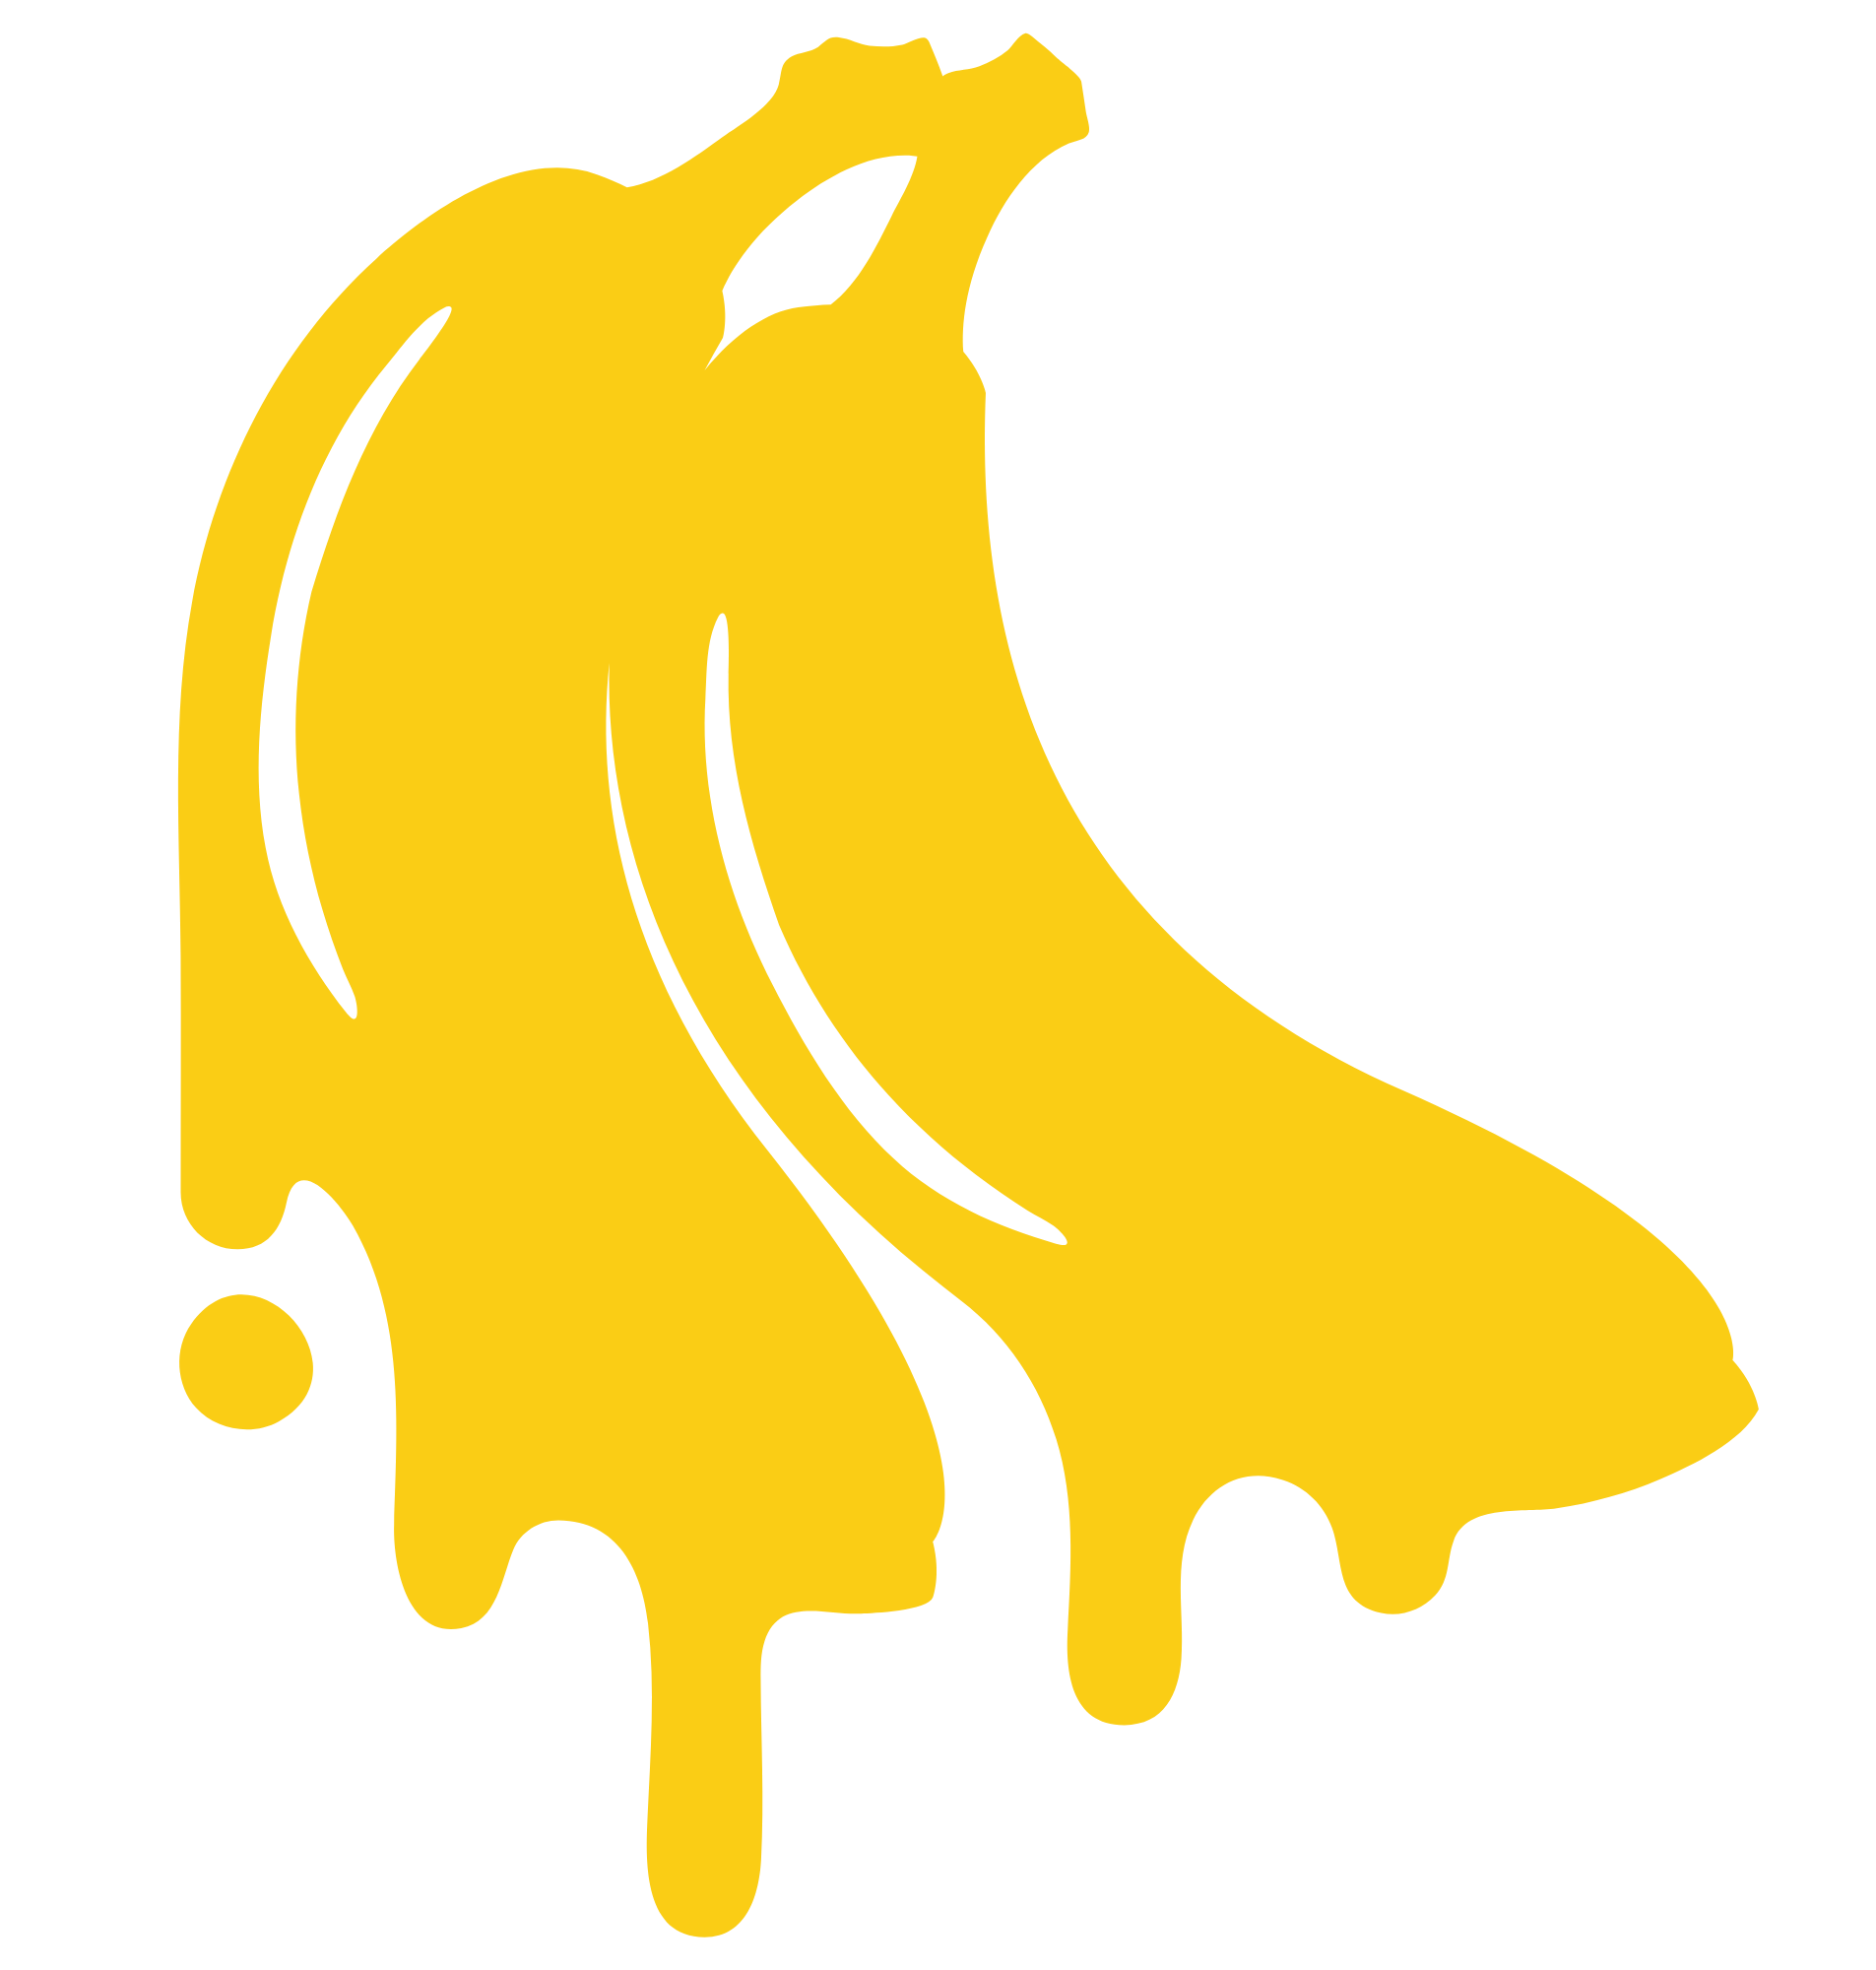 Bananagencia logo agencia publicidad marketing banana amarilla